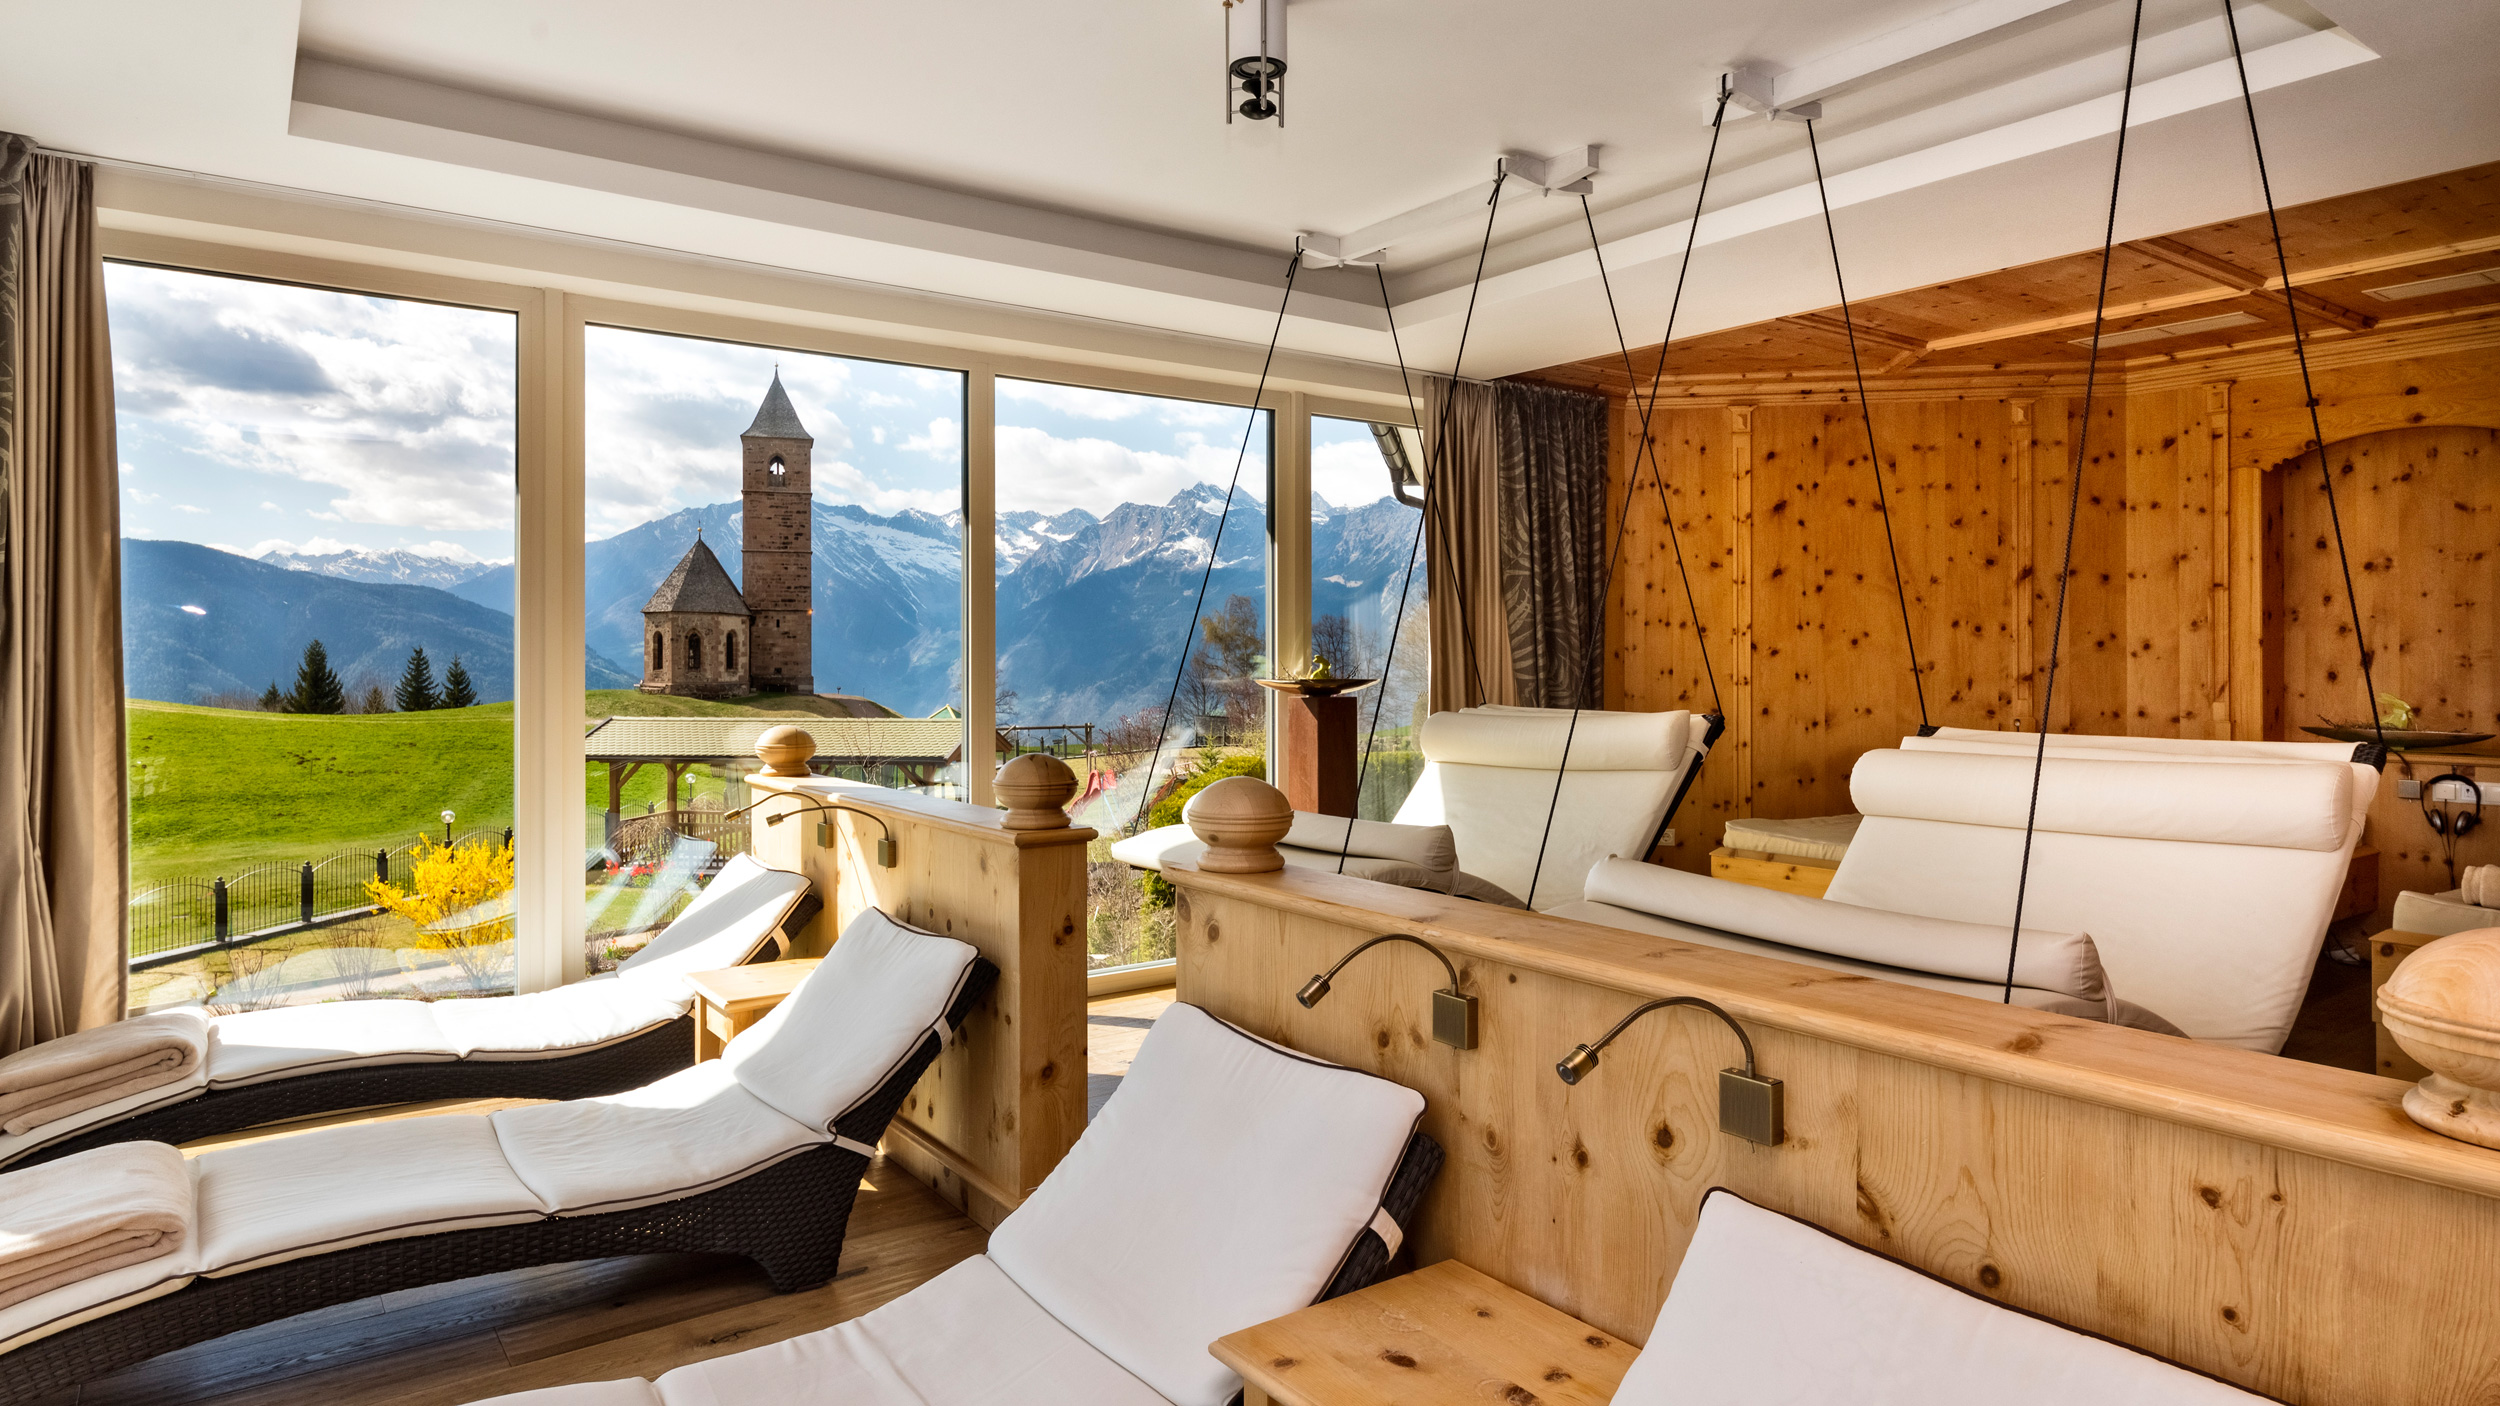 Ruheraum Panoramablick Wellness Hafling Südtirol | Sala relax vista panoramica benessere Avelengo Alto Adige | Relaxation Room Panoramic View Wellness Hafling South Tyrol